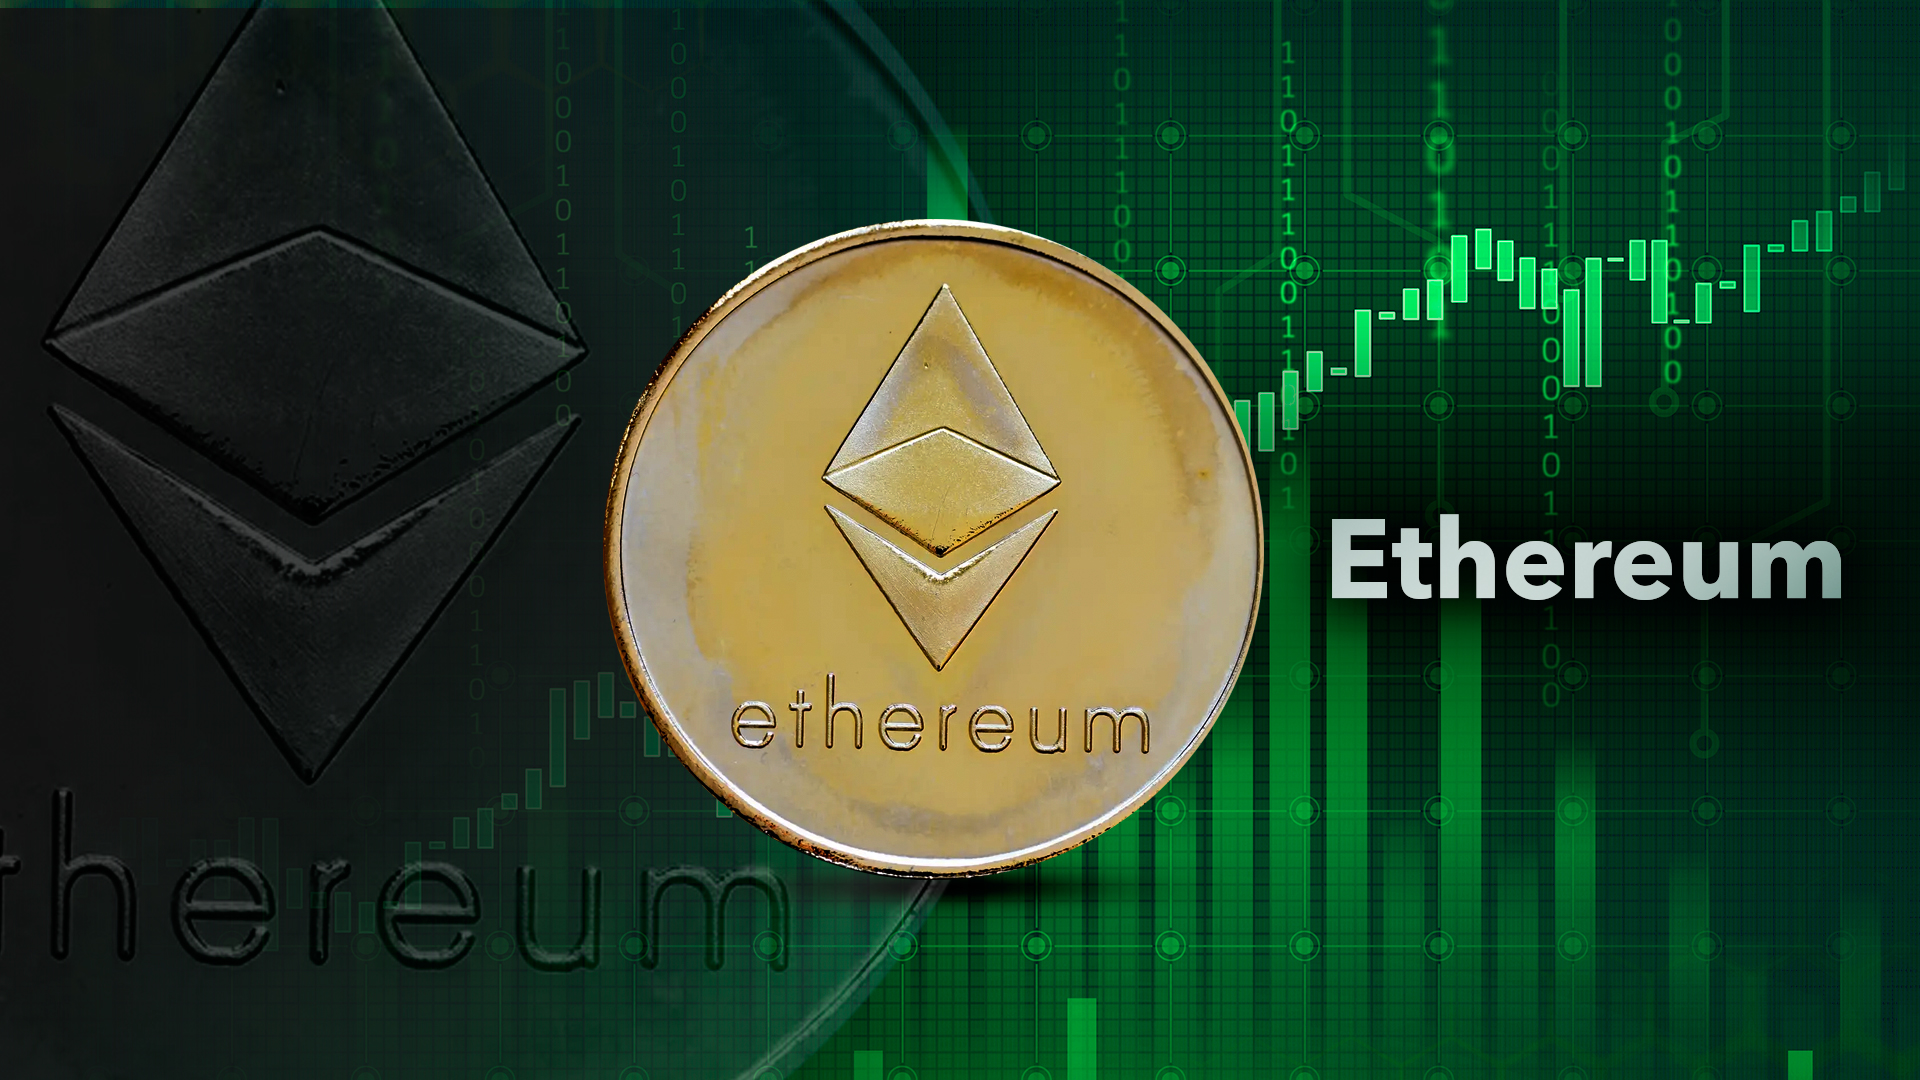 La criptomoneda de ethereum en la lucha por recuperar su valor: así cotiza este 17 de mayo